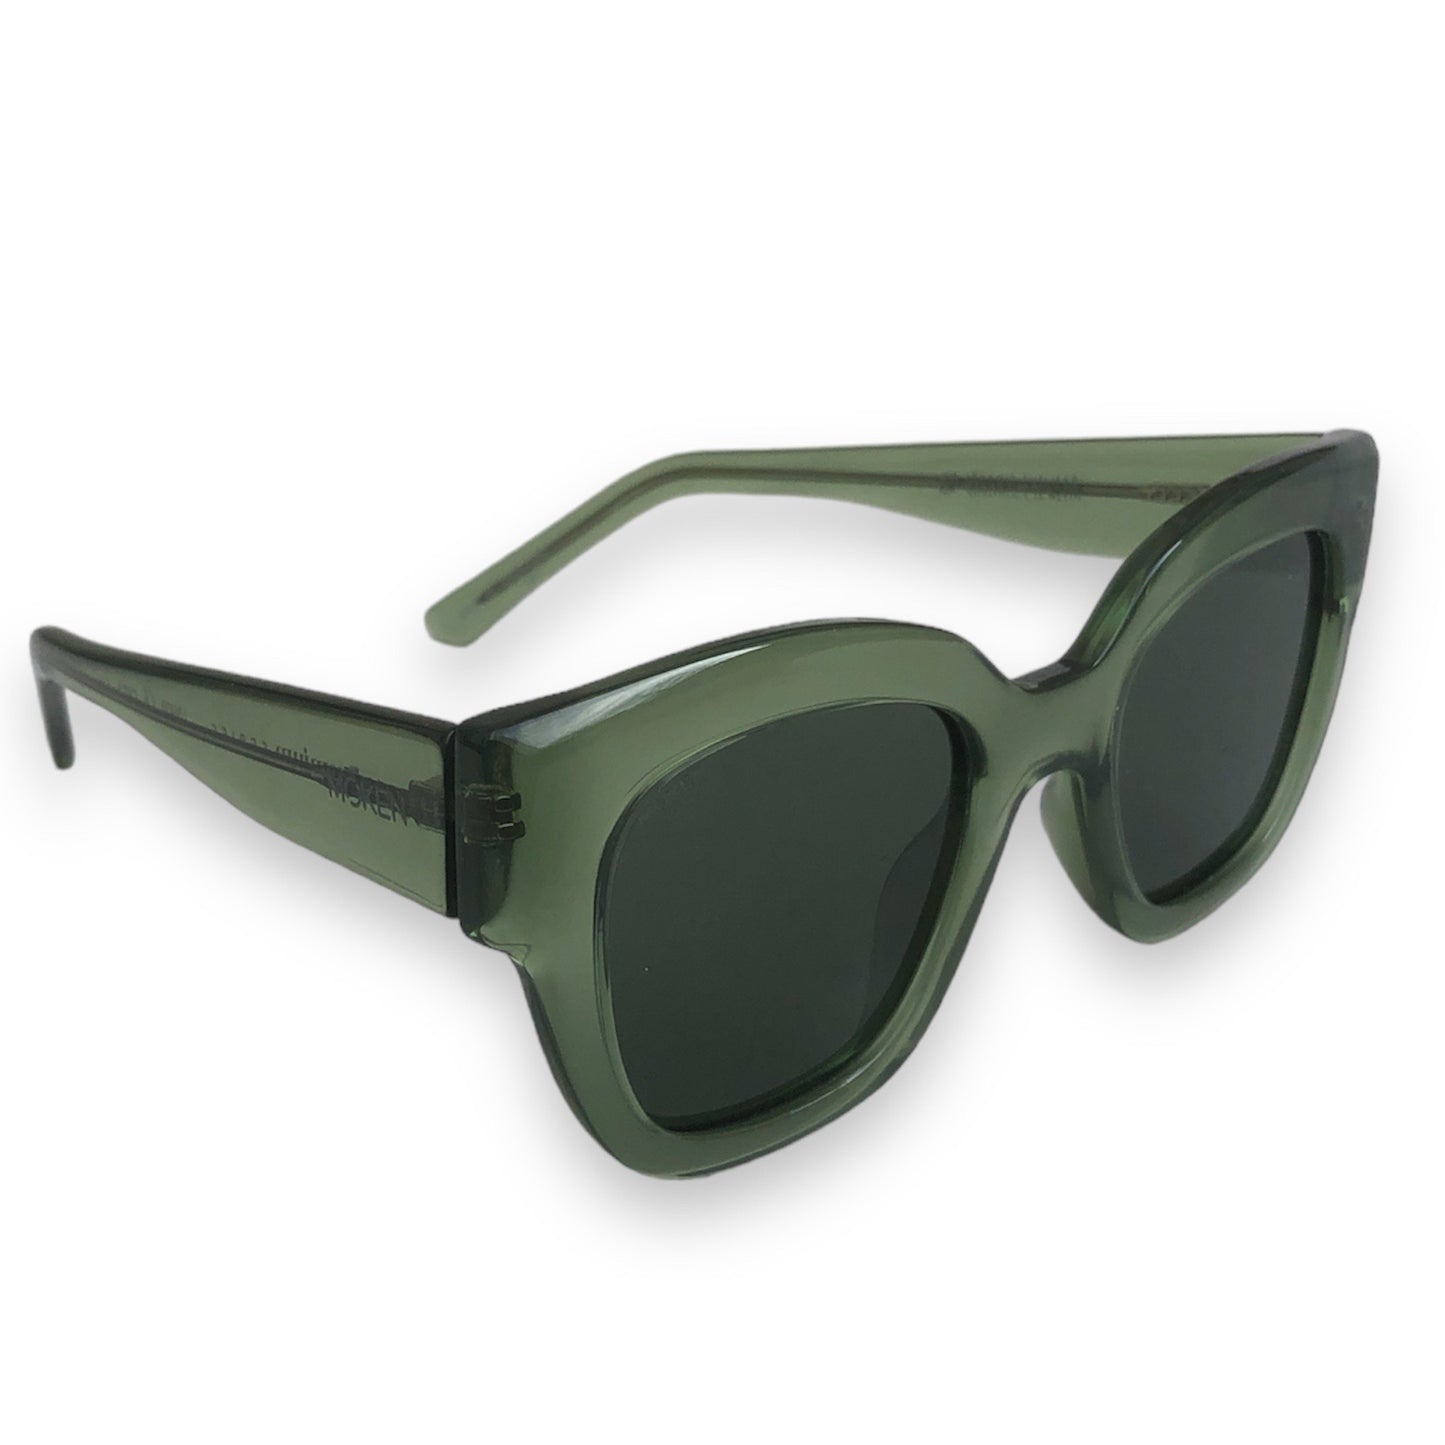 Sonnenbrille Monroe aus pflanzenbasiertem Kunststoff